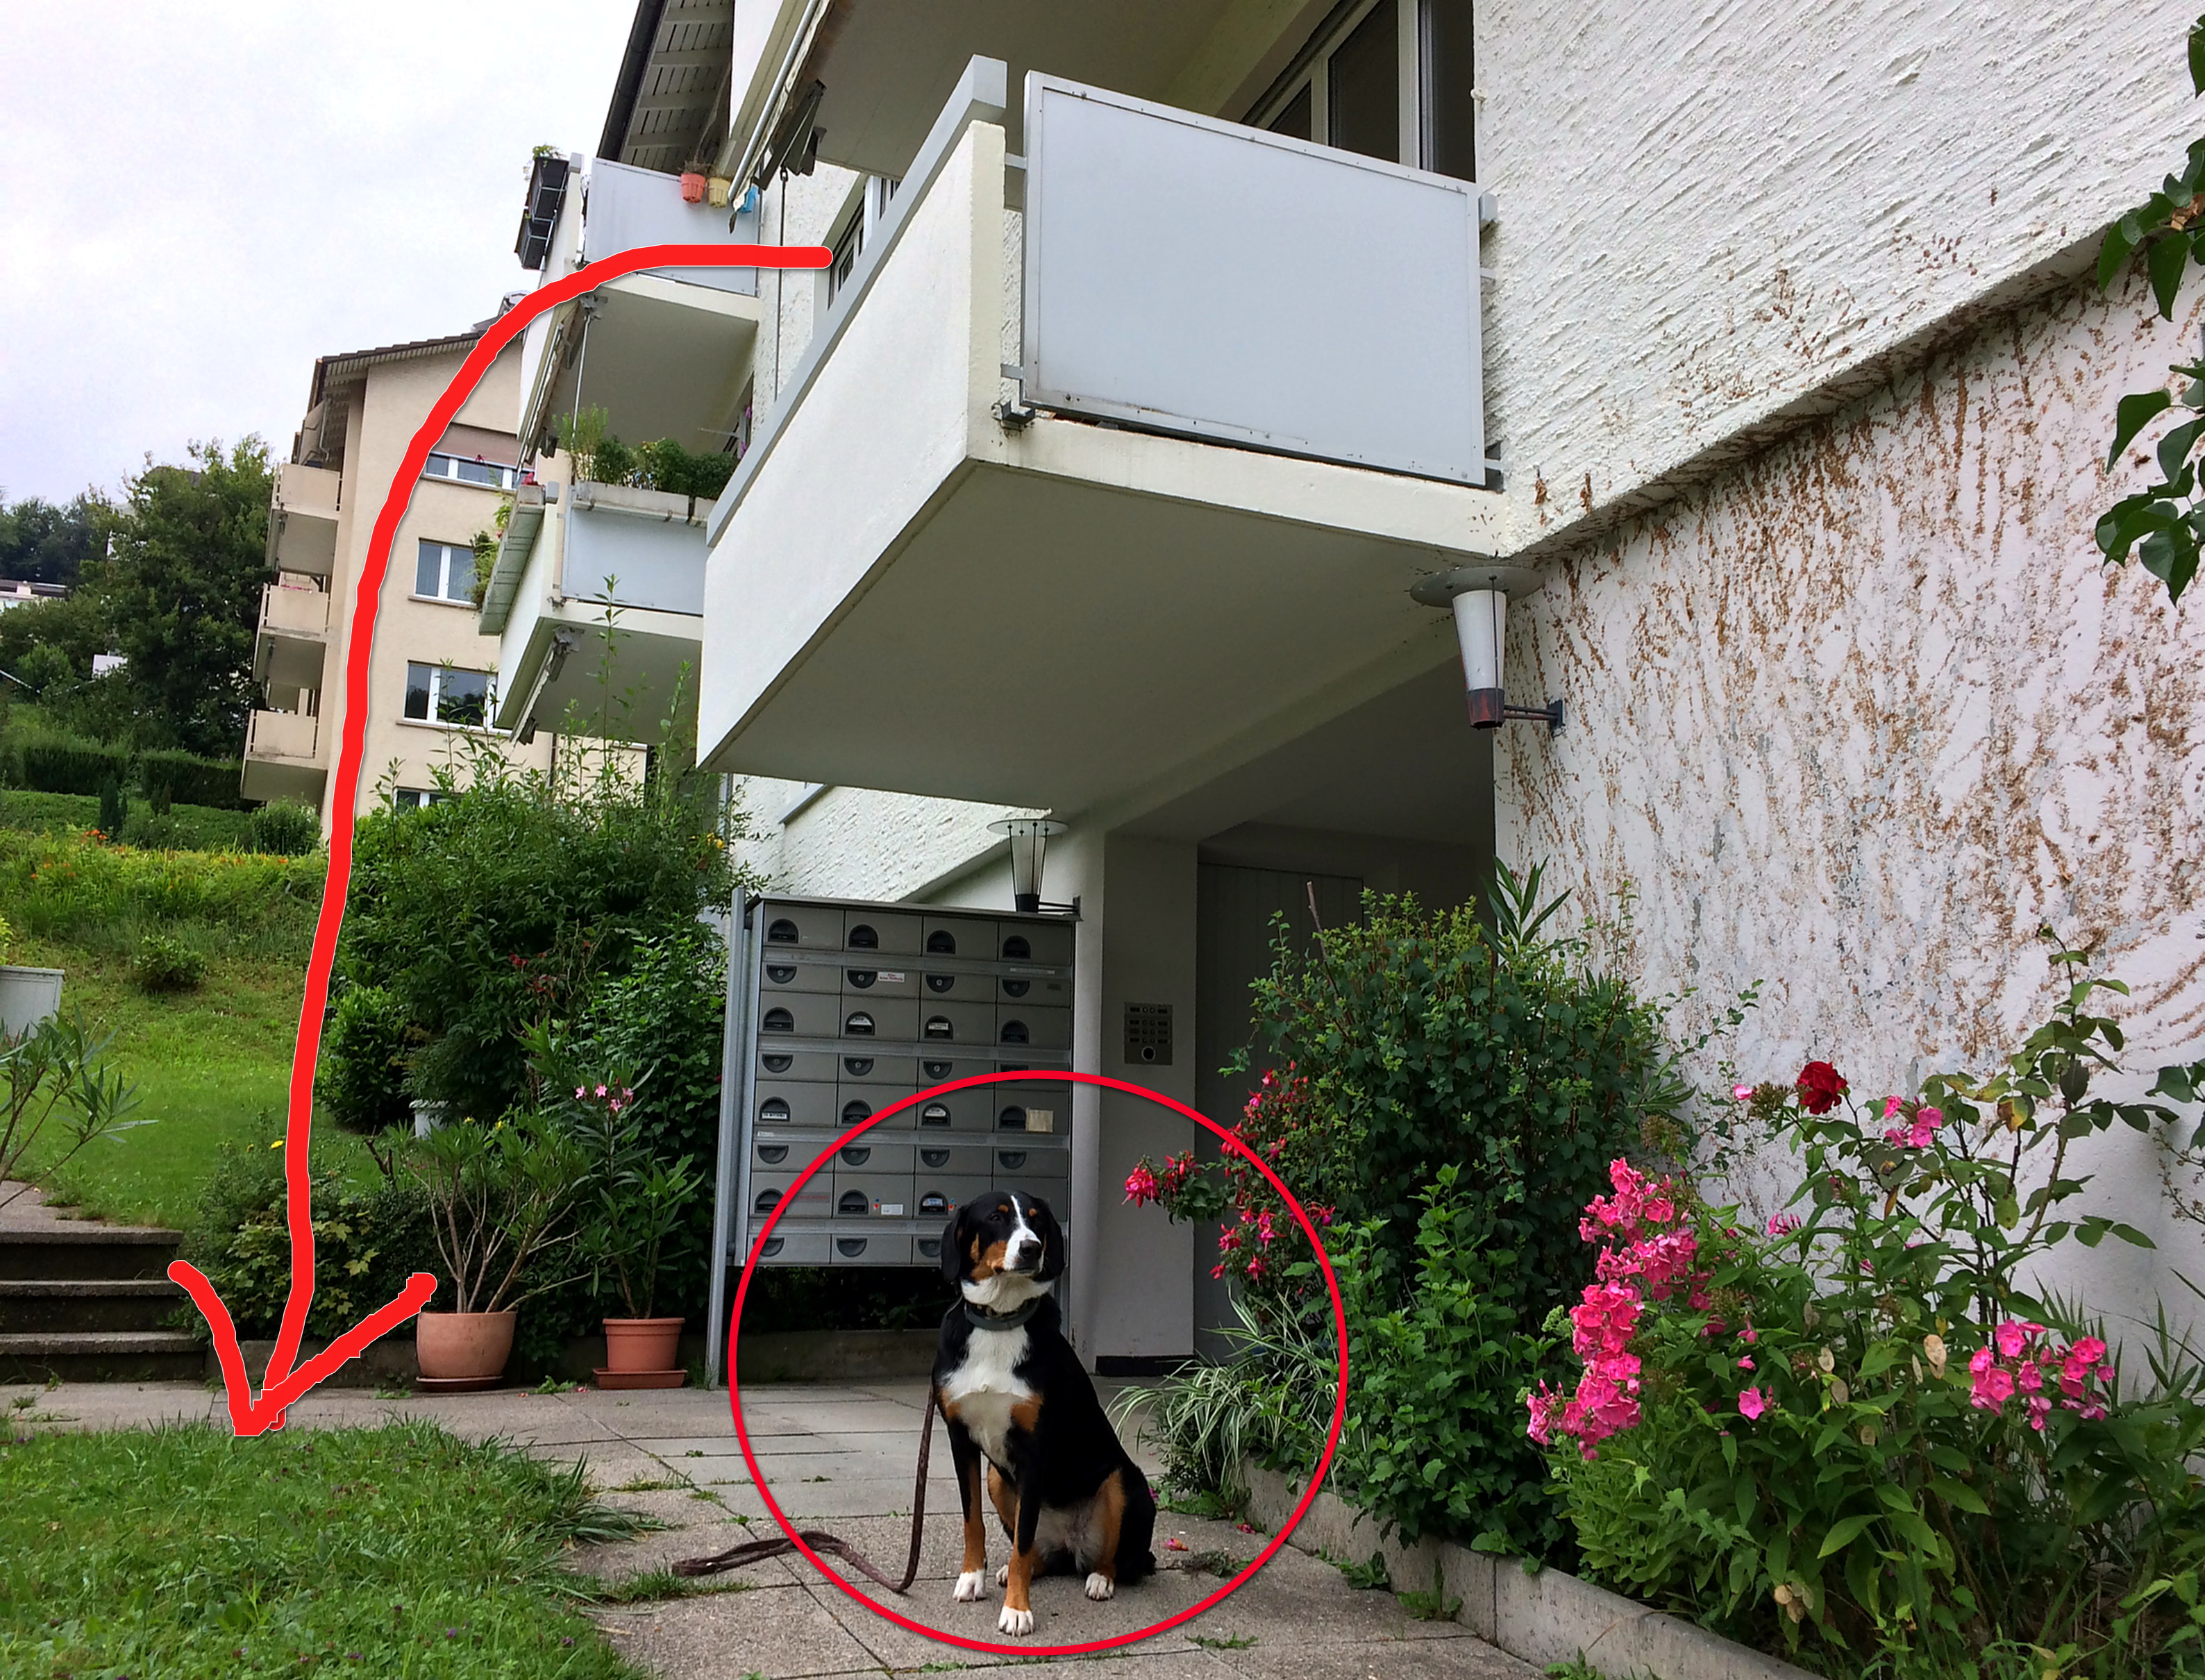 Envision Elendighed Elskede Der Hund, der vom Balkon sprang - Tratsch.ch